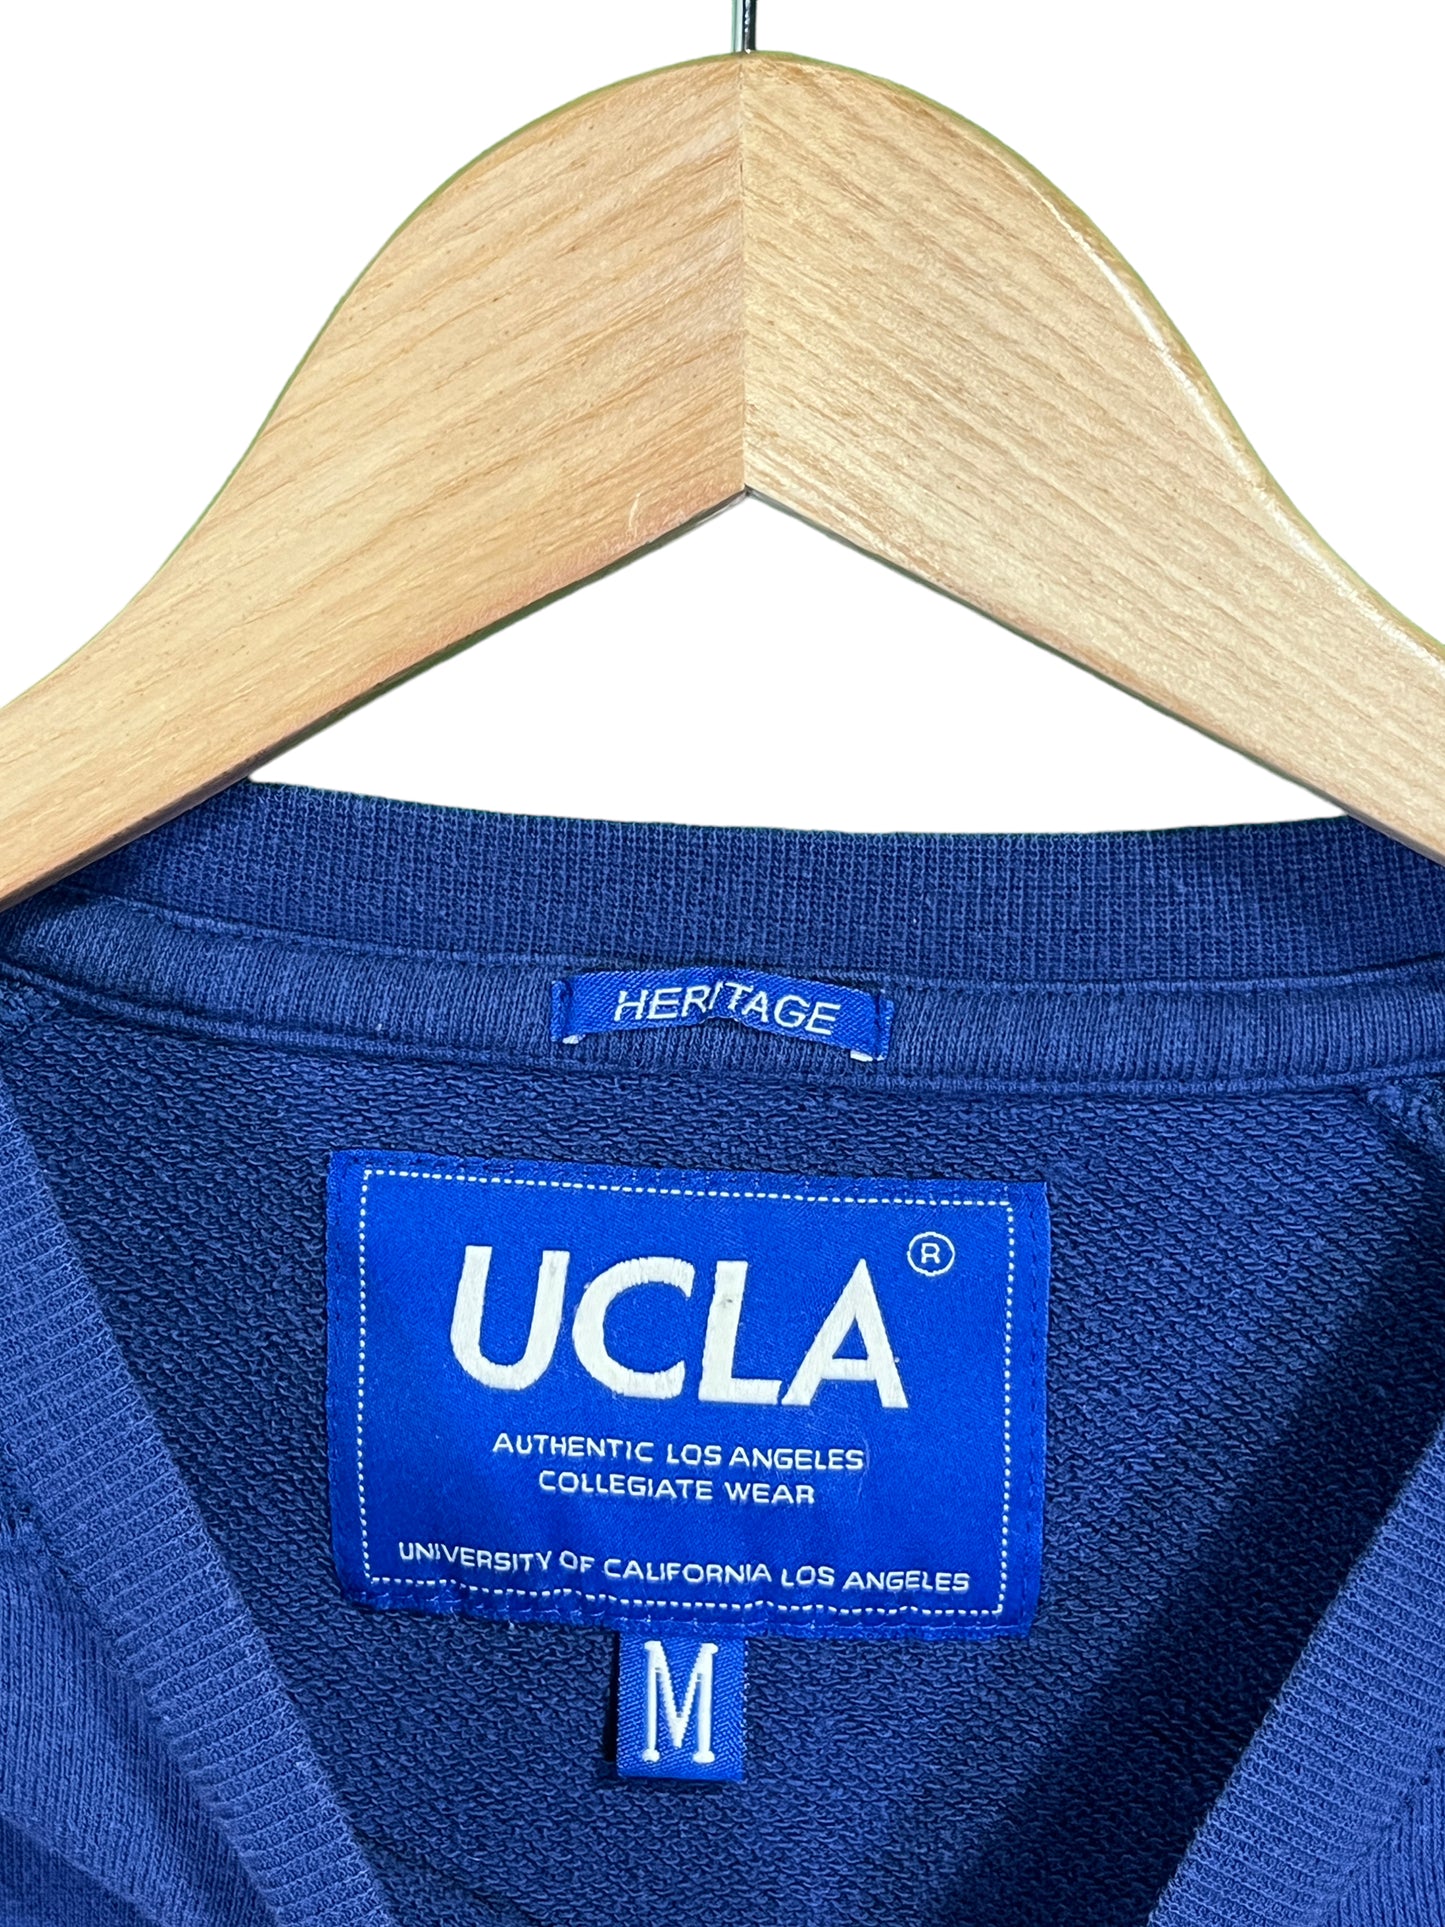 Heritage Brand UCLA Collegiate Wear Crewneck Sweater Size Medium